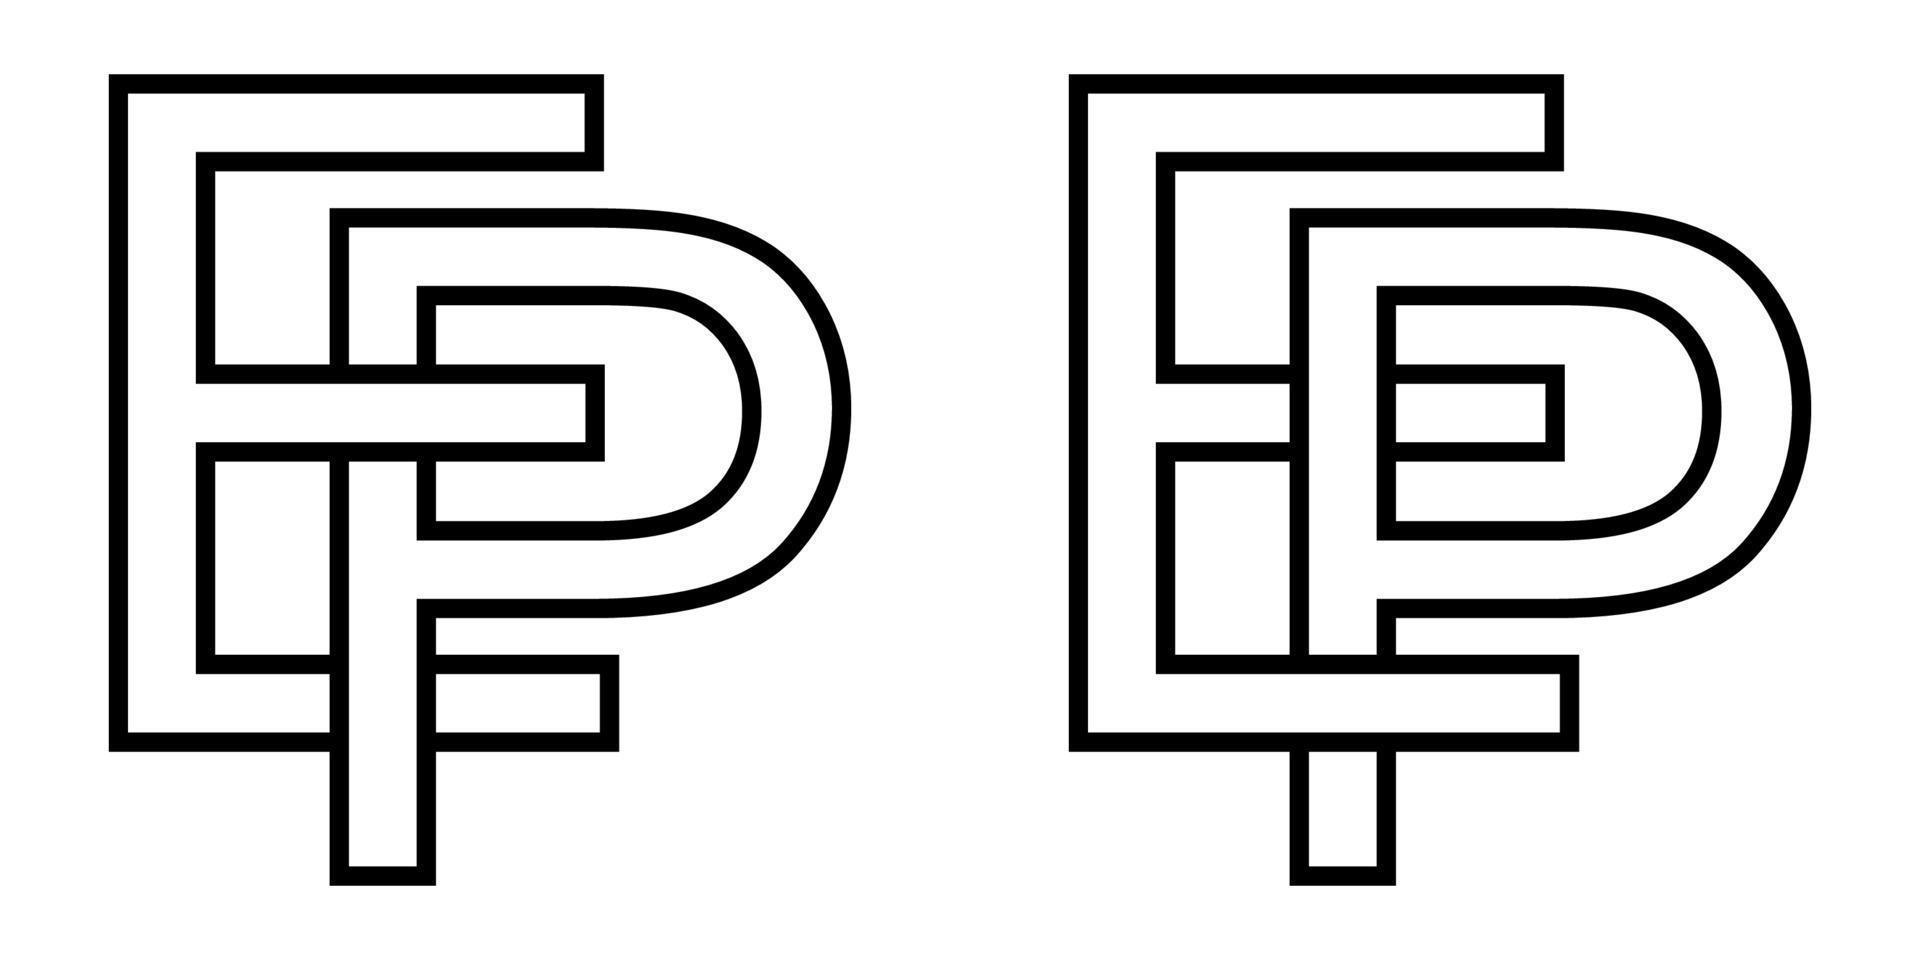 logo teken ep pe icoon teken doorweven brieven p, e vector logo ep, pe eerste hoofdstad brieven patroon alfabet e, p